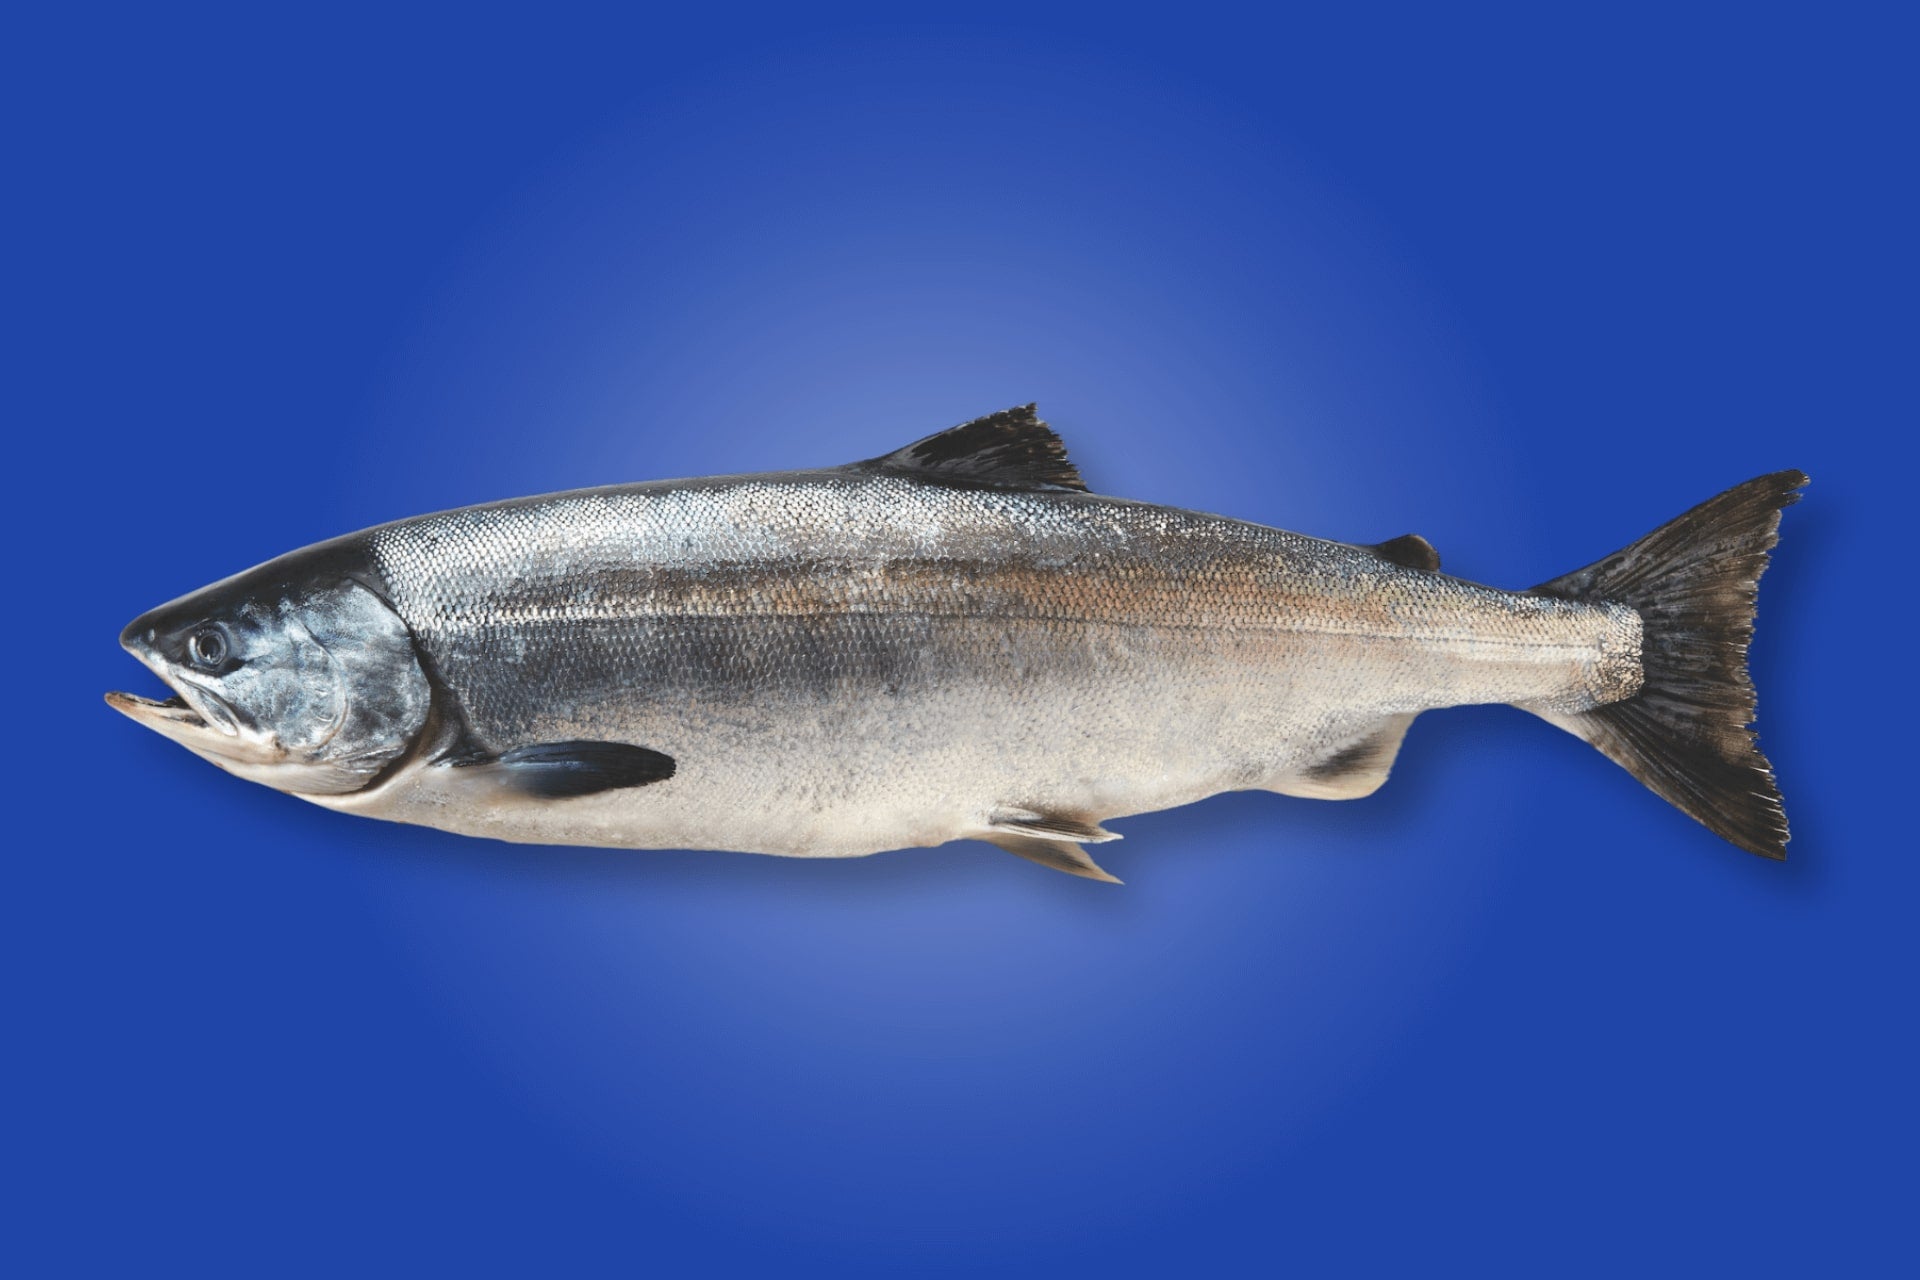 Smoked Chum Salmon, Alaska (Keta) – SupremeFish